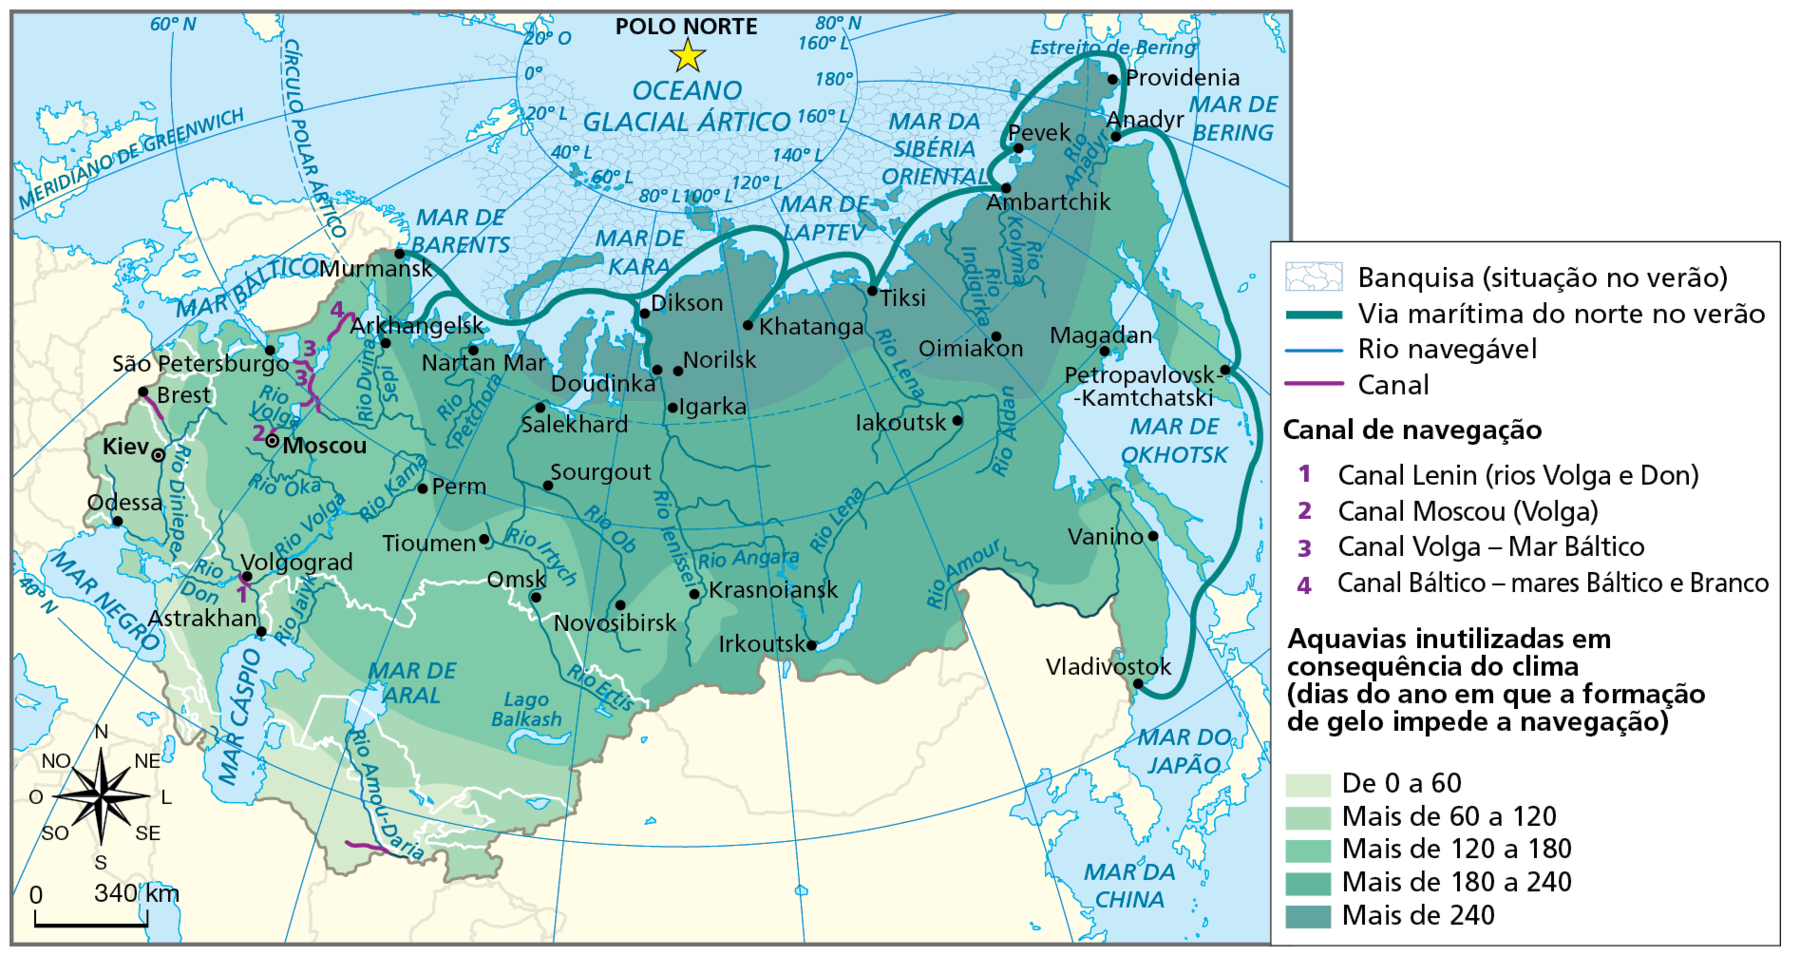 Mapa. CEI: aquavias e suas limitações em razão do clima. Mapa representando a rede hidrográfica dos países da CEI, os canais de navegação e as aquavias inutilizadas em consequência do clima.
Banquisa (situação no verão): porção do Oceano Glacial Ártico, situado ao norte da Rússia. 
Via marítima do norte no verão: linha verde atravessa todo o litoral norte e leste da Rússia, conectando as cidades de: Murmansk, Arkhangelsk, Doudinka, Dikson, Khatanga, Tiksi, Ambartchik, Pevek, Providenia, Amadyr, Petropavlovsk-Kamtchatski e Vladivostok. Esta via atravessa o Mar de Barents, Mar de Kara, Mar de Laptev, Mar da Sibéria Oriental, Mar de Bering, Mar de Okhotsk e norte do Mar do Japão.
Rio navegável: Rio Lena, Rio Aldan, Rio Anadyr, Rio Kolyma, Rio Indigirka, Rio Amour, Rio Angara, Rio Ob, Rio Petchora, Rio Divina Sepi, Rio Irtych, Rio Volga, Rio Kama, Rio Dinieper, Rio Don, Rio Amou-Daria, Rio Ertis, Rio Kama, Rio Ienissei, Rio Oka e Rio Jaivk. 
Canal: localizados na faixa noroeste e sudoeste da Rússia e sul do Turcomenistão.
Canal de navegação: 
1. Canal de Lenin (rios Volga e Don), entre os mares Negro e Cáspio.
2. Canal Moscou (Volga), no noroeste da Rússia.
3. Canal Volga, no noroeste da Rússia.
4. Canal Báltico – mares Báltico e Branco, no noroeste da Rússia.
Aquavias inutilizadas em consequência do clima (dias do ano em que a formação de gelo impede a navegação)
De 0 a 60: porção nos territórios do Turcomenistão, Azerbaijão, Geórgia e Armênia.
Mais de 60 a 120: porção dos territórios de Uzbequistão, Ucrânia e sudeste da Rússia.
Mais de 120 a 180: porção do território do Cazaquistão, sudeste, sudoeste e oeste da Rússia. 
Mais de 180 a 240: porção noroeste, centro, sul e sudeste da Rússia.
Mais de 240: extremo norte e nordeste da Rússia.
Na porção inferior, rosa dos ventos e escala de 0 a 340 quilômetros.